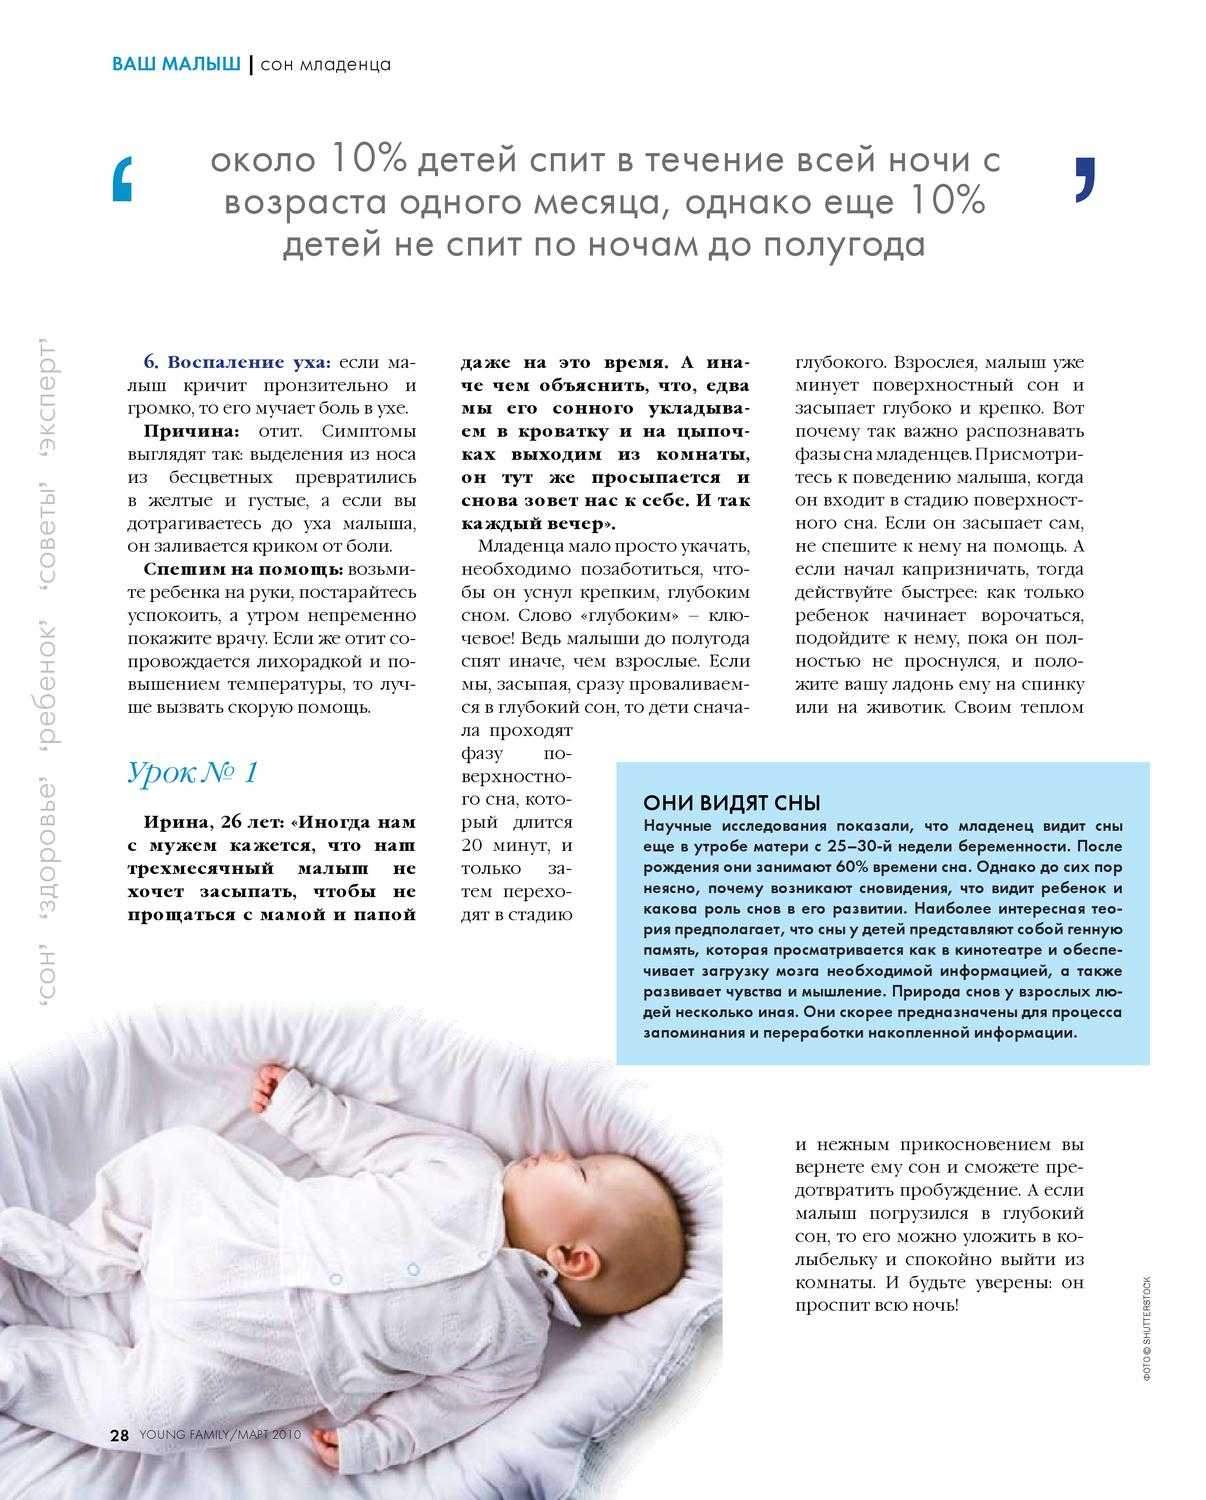 Как должен лежать младенец. как должен спать новорожденный ребенок, как правильно его уложить